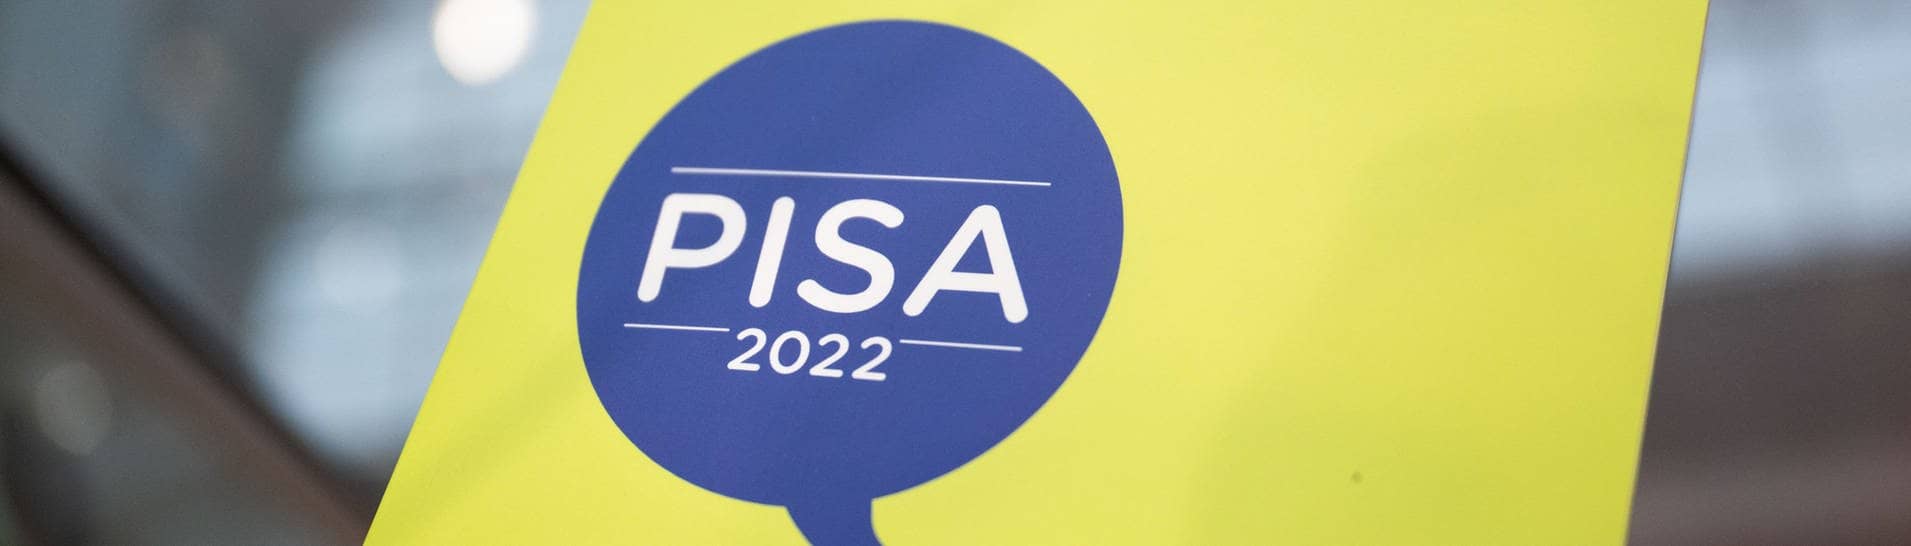 Die Ergebnisse der PISA-Studie 2022 sind veröffentlich. Wie verlässlich sind die Zahlen?